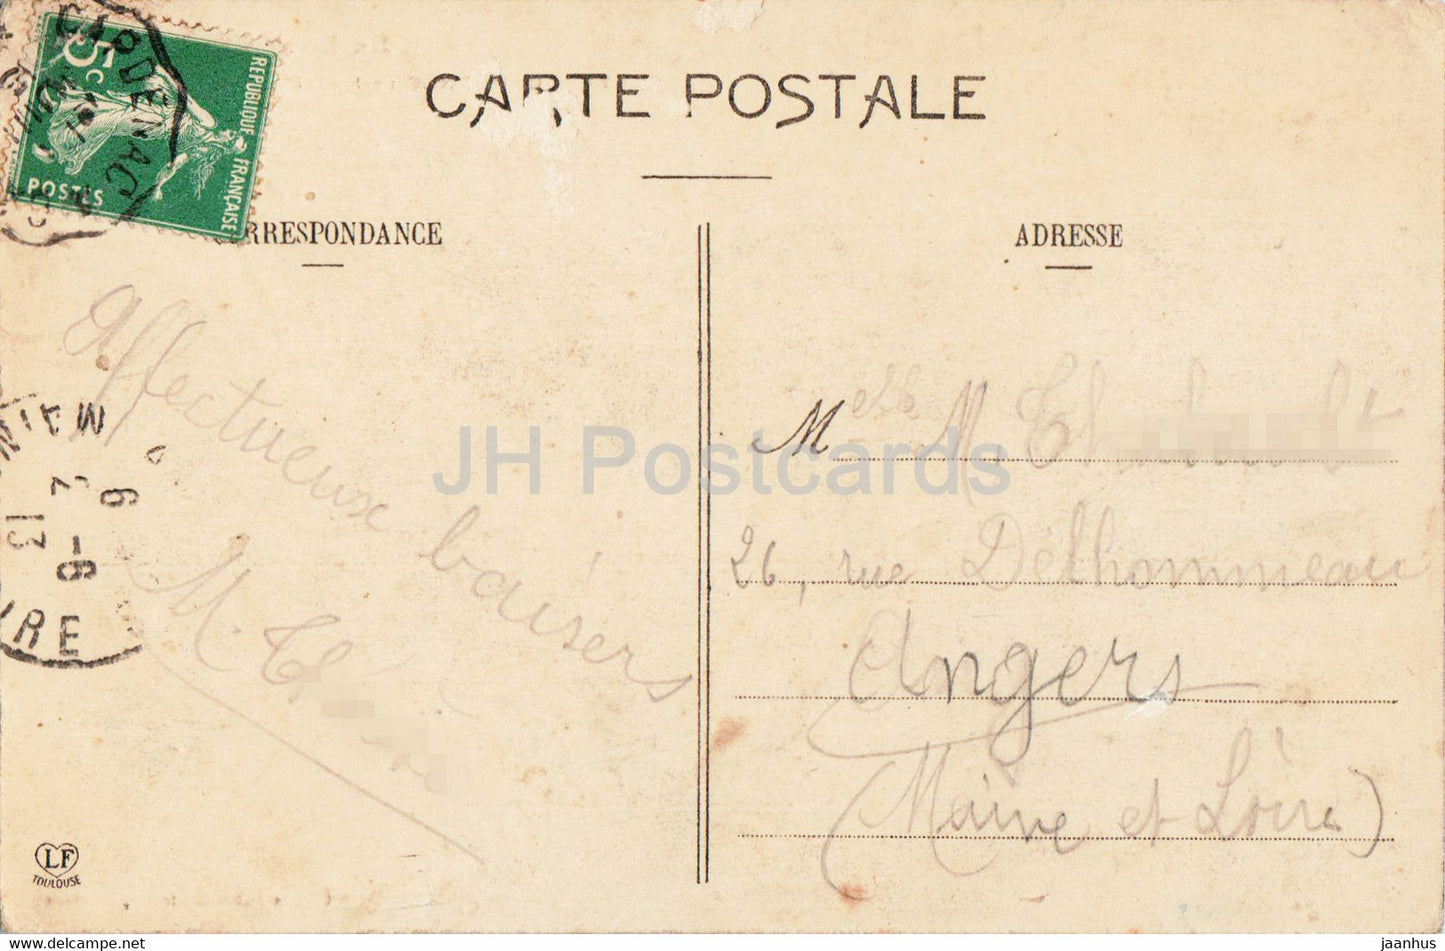 Capdenac Le Haut et la Ville Neuve - 127 - Le Lot - old postcard - 1913 - France - used